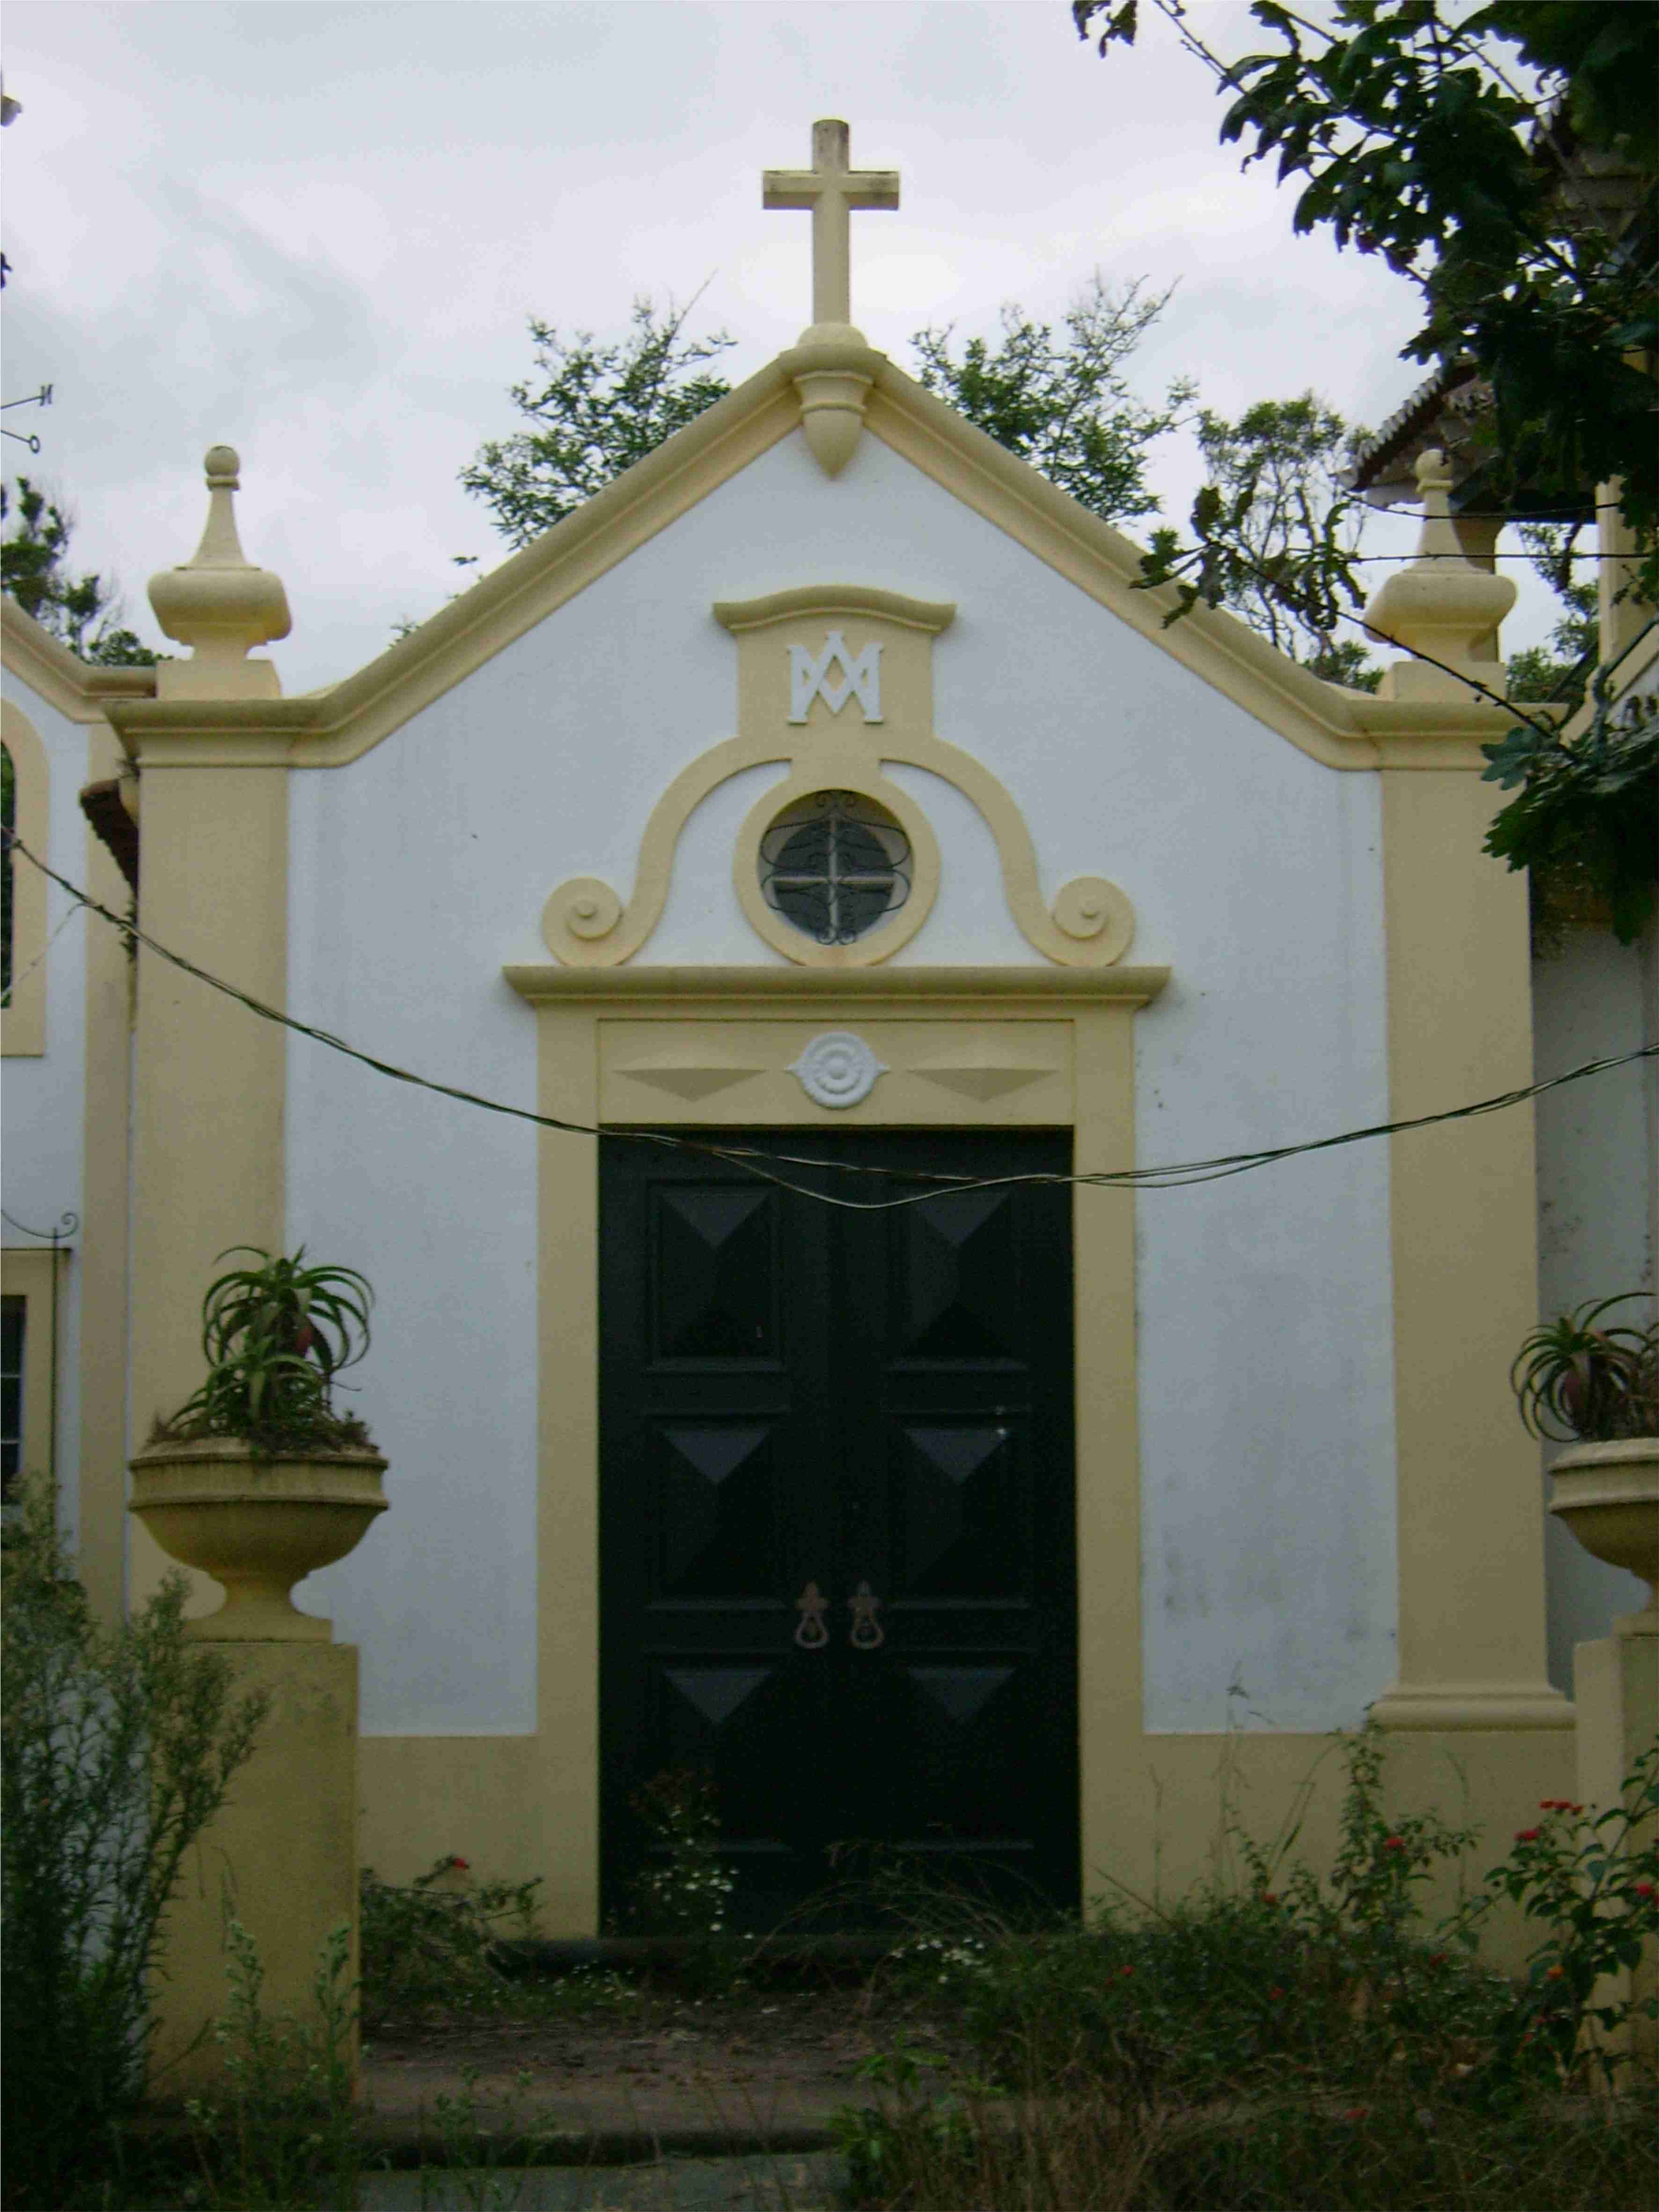 Levantamento planimétrico a Altimétrico de um Palacete Centenário - São Miguel - Açores